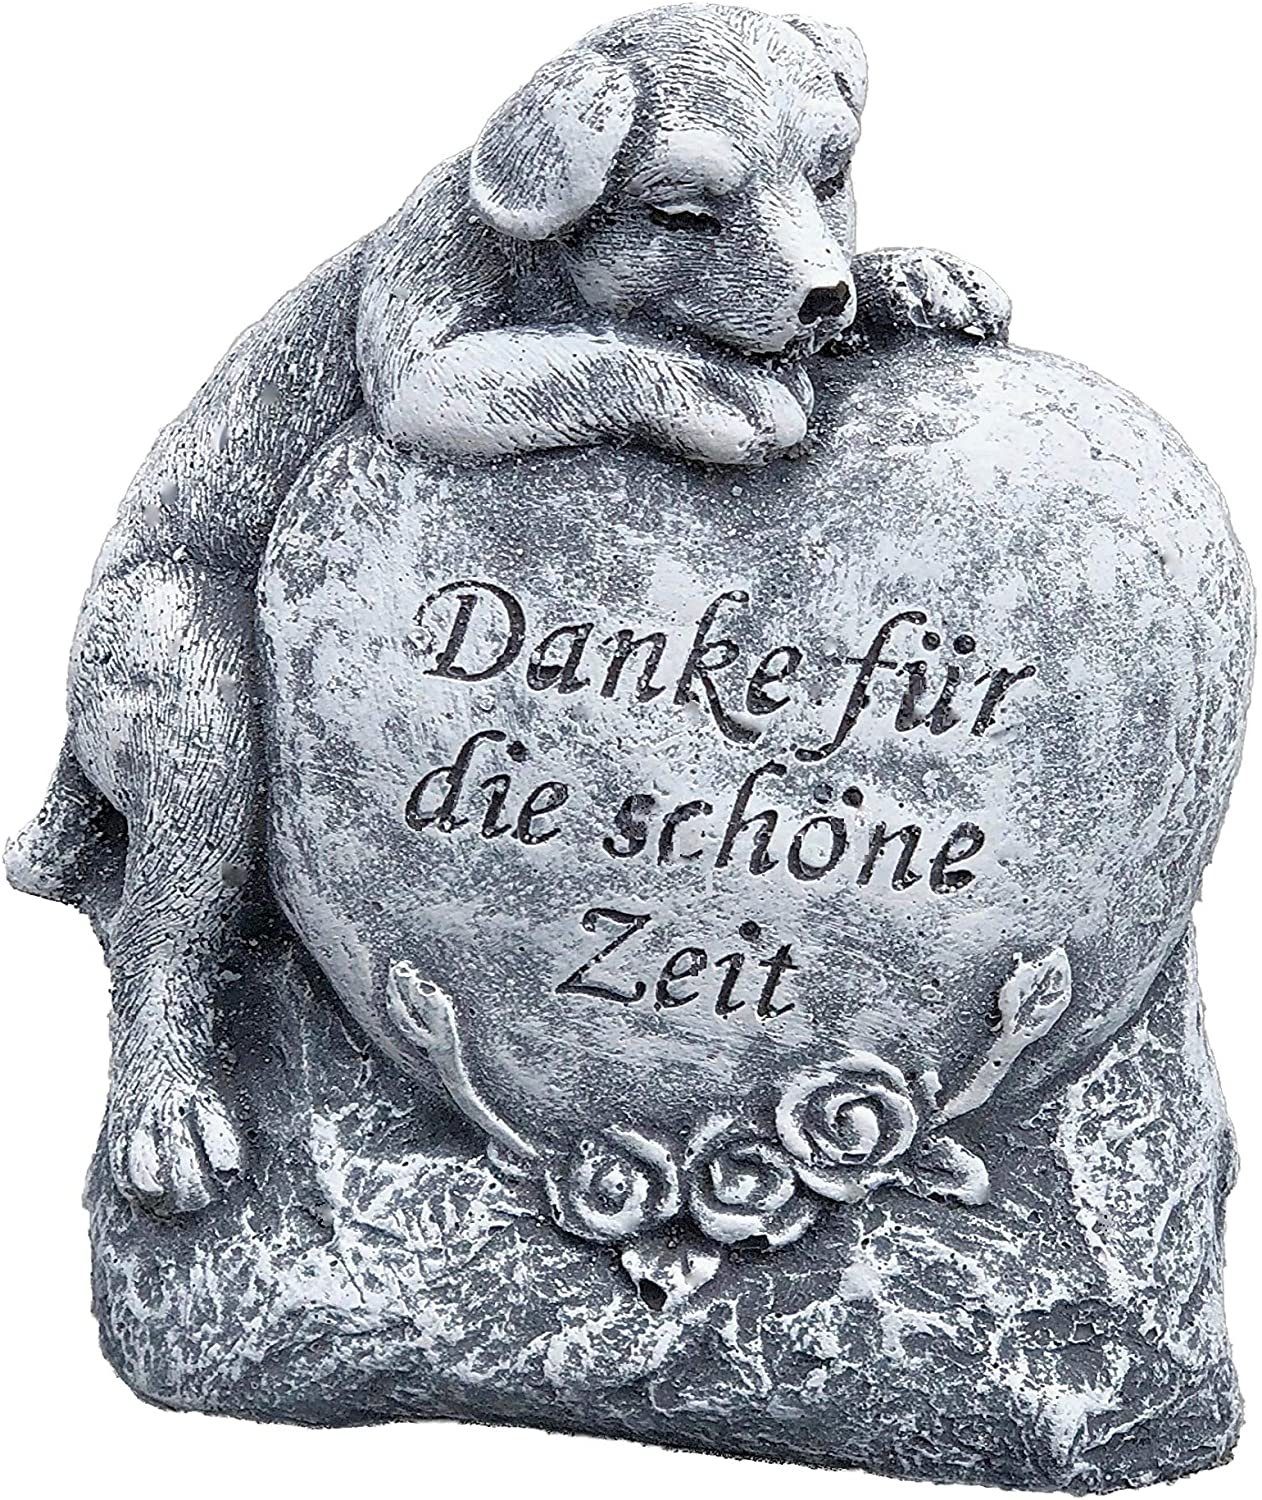 Stone and Style Gartenfigur Steinfigur Grabschmuck Hund " Danke für die schöne Zeit "